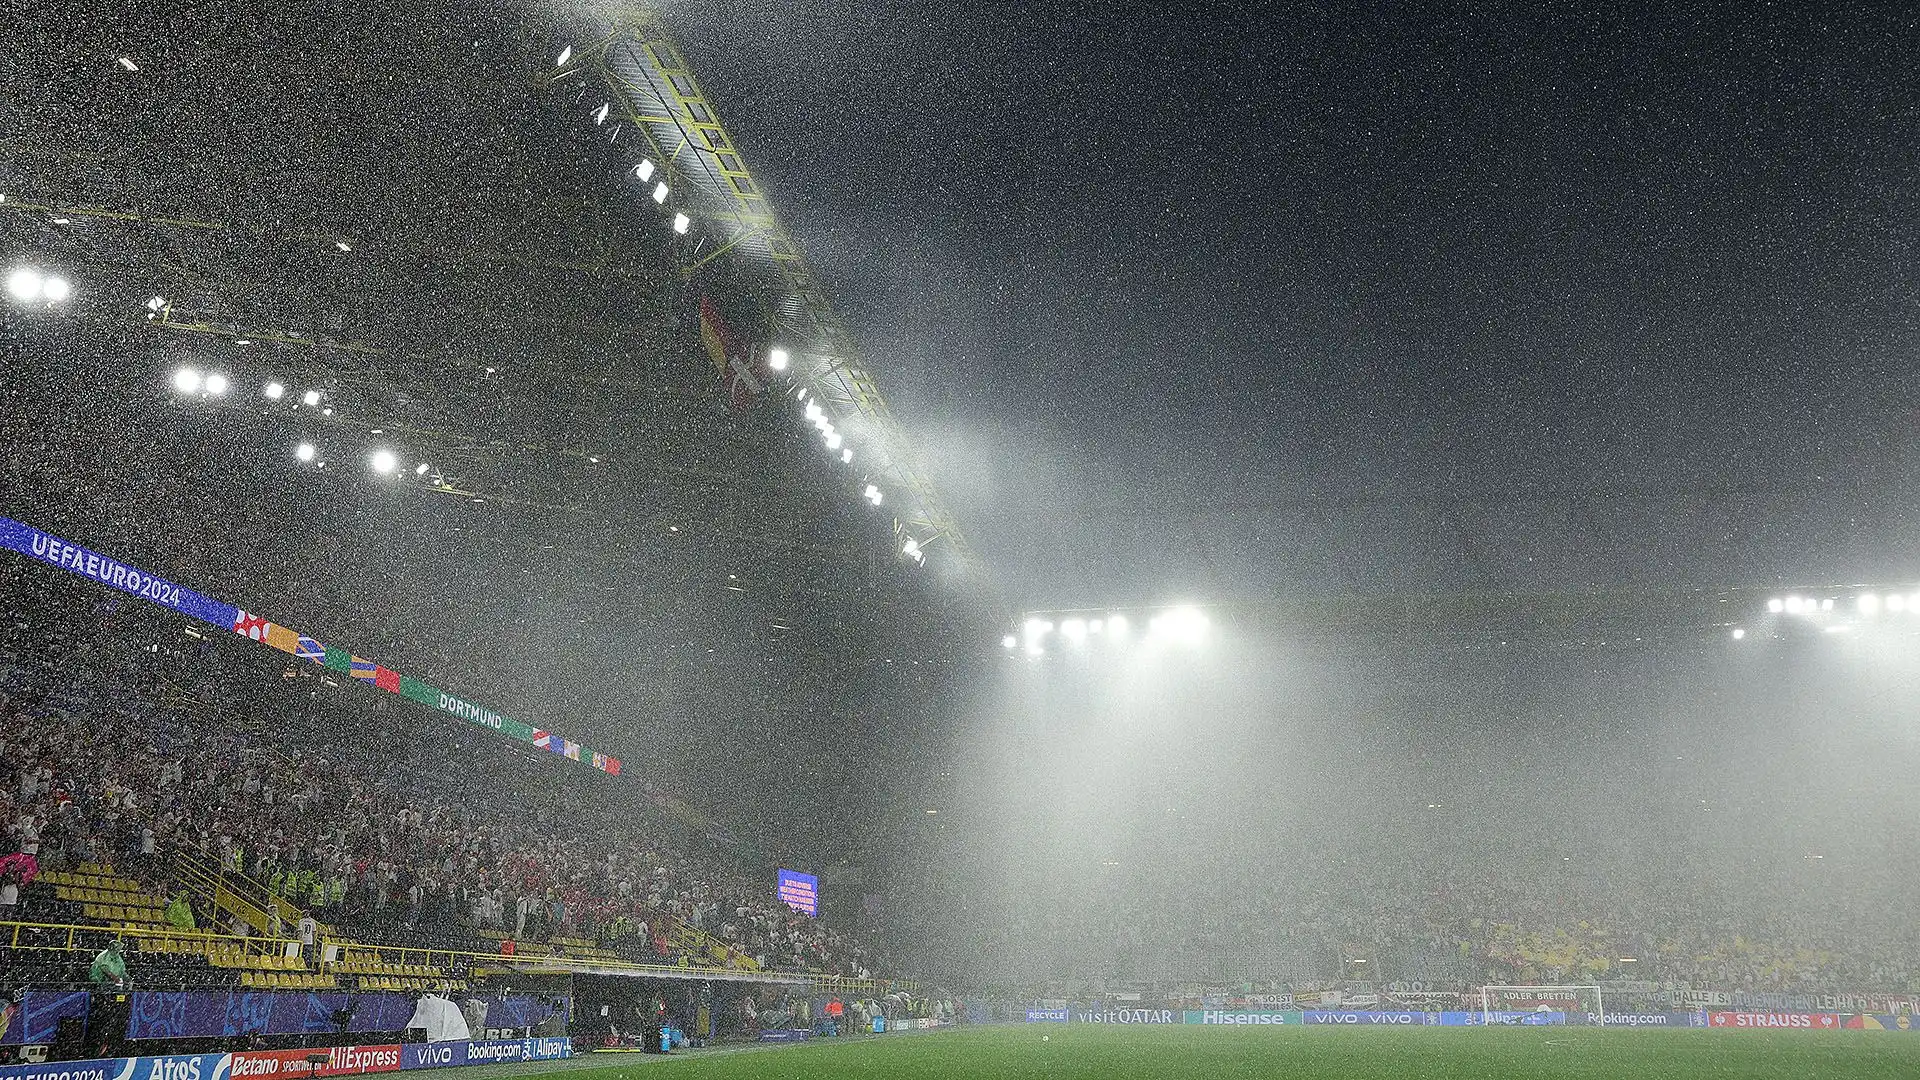 E' la seconda volta in questo europeo che un acquazzone cala su Dortmund durante una partita